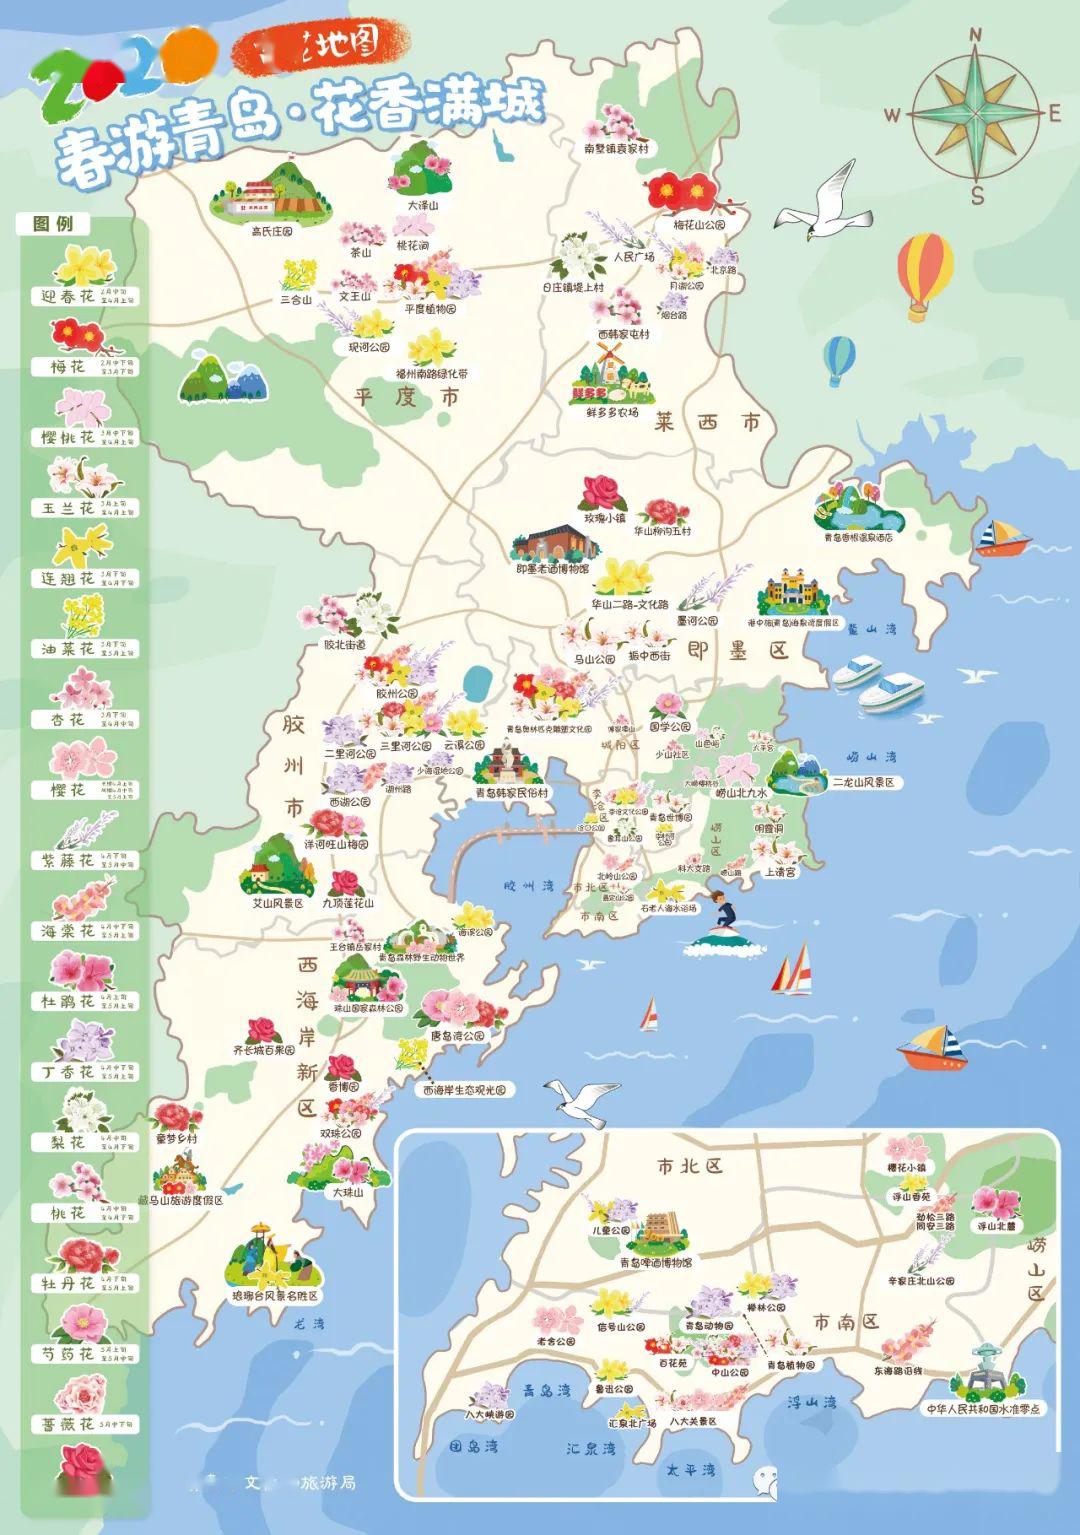 青岛市文化和旅游局 推出2020春季岛城赏花地图!